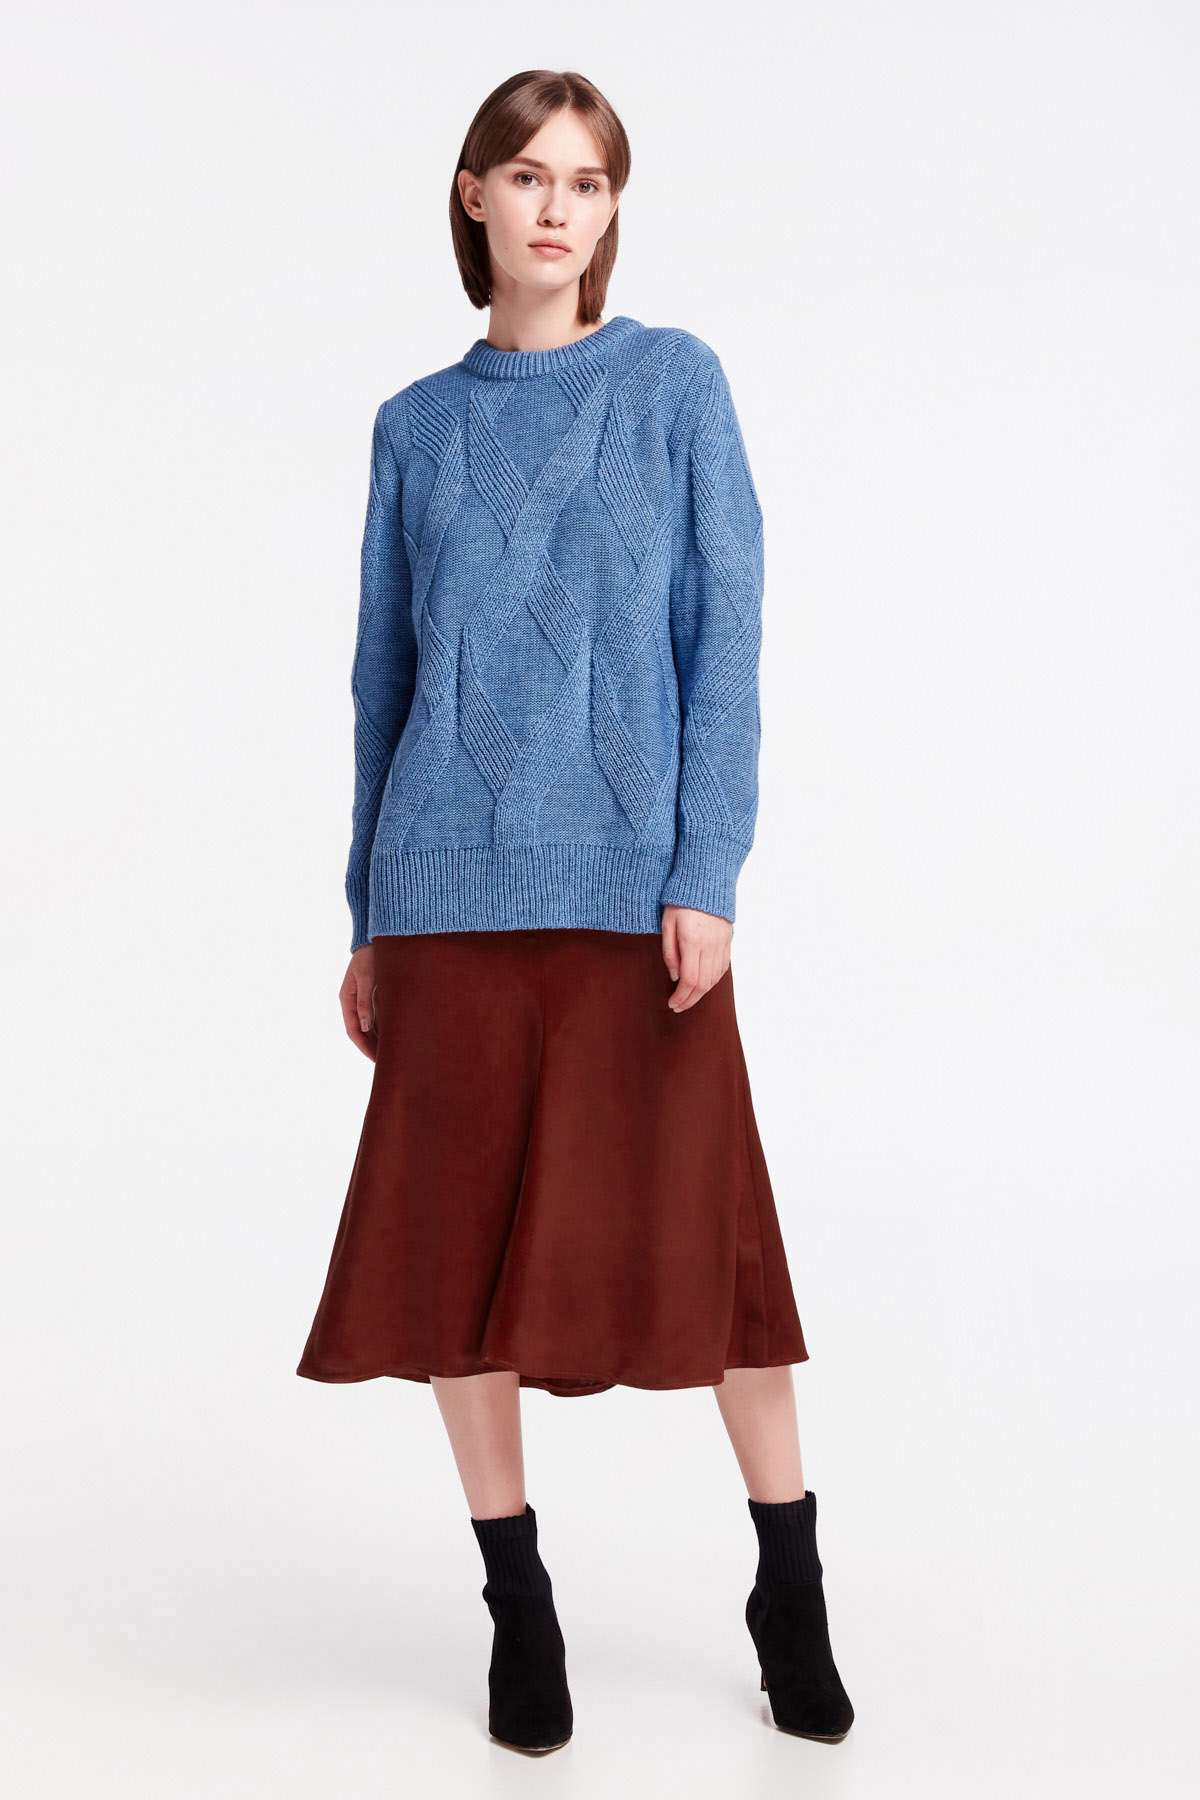 Blue free knit sweater, photo 2